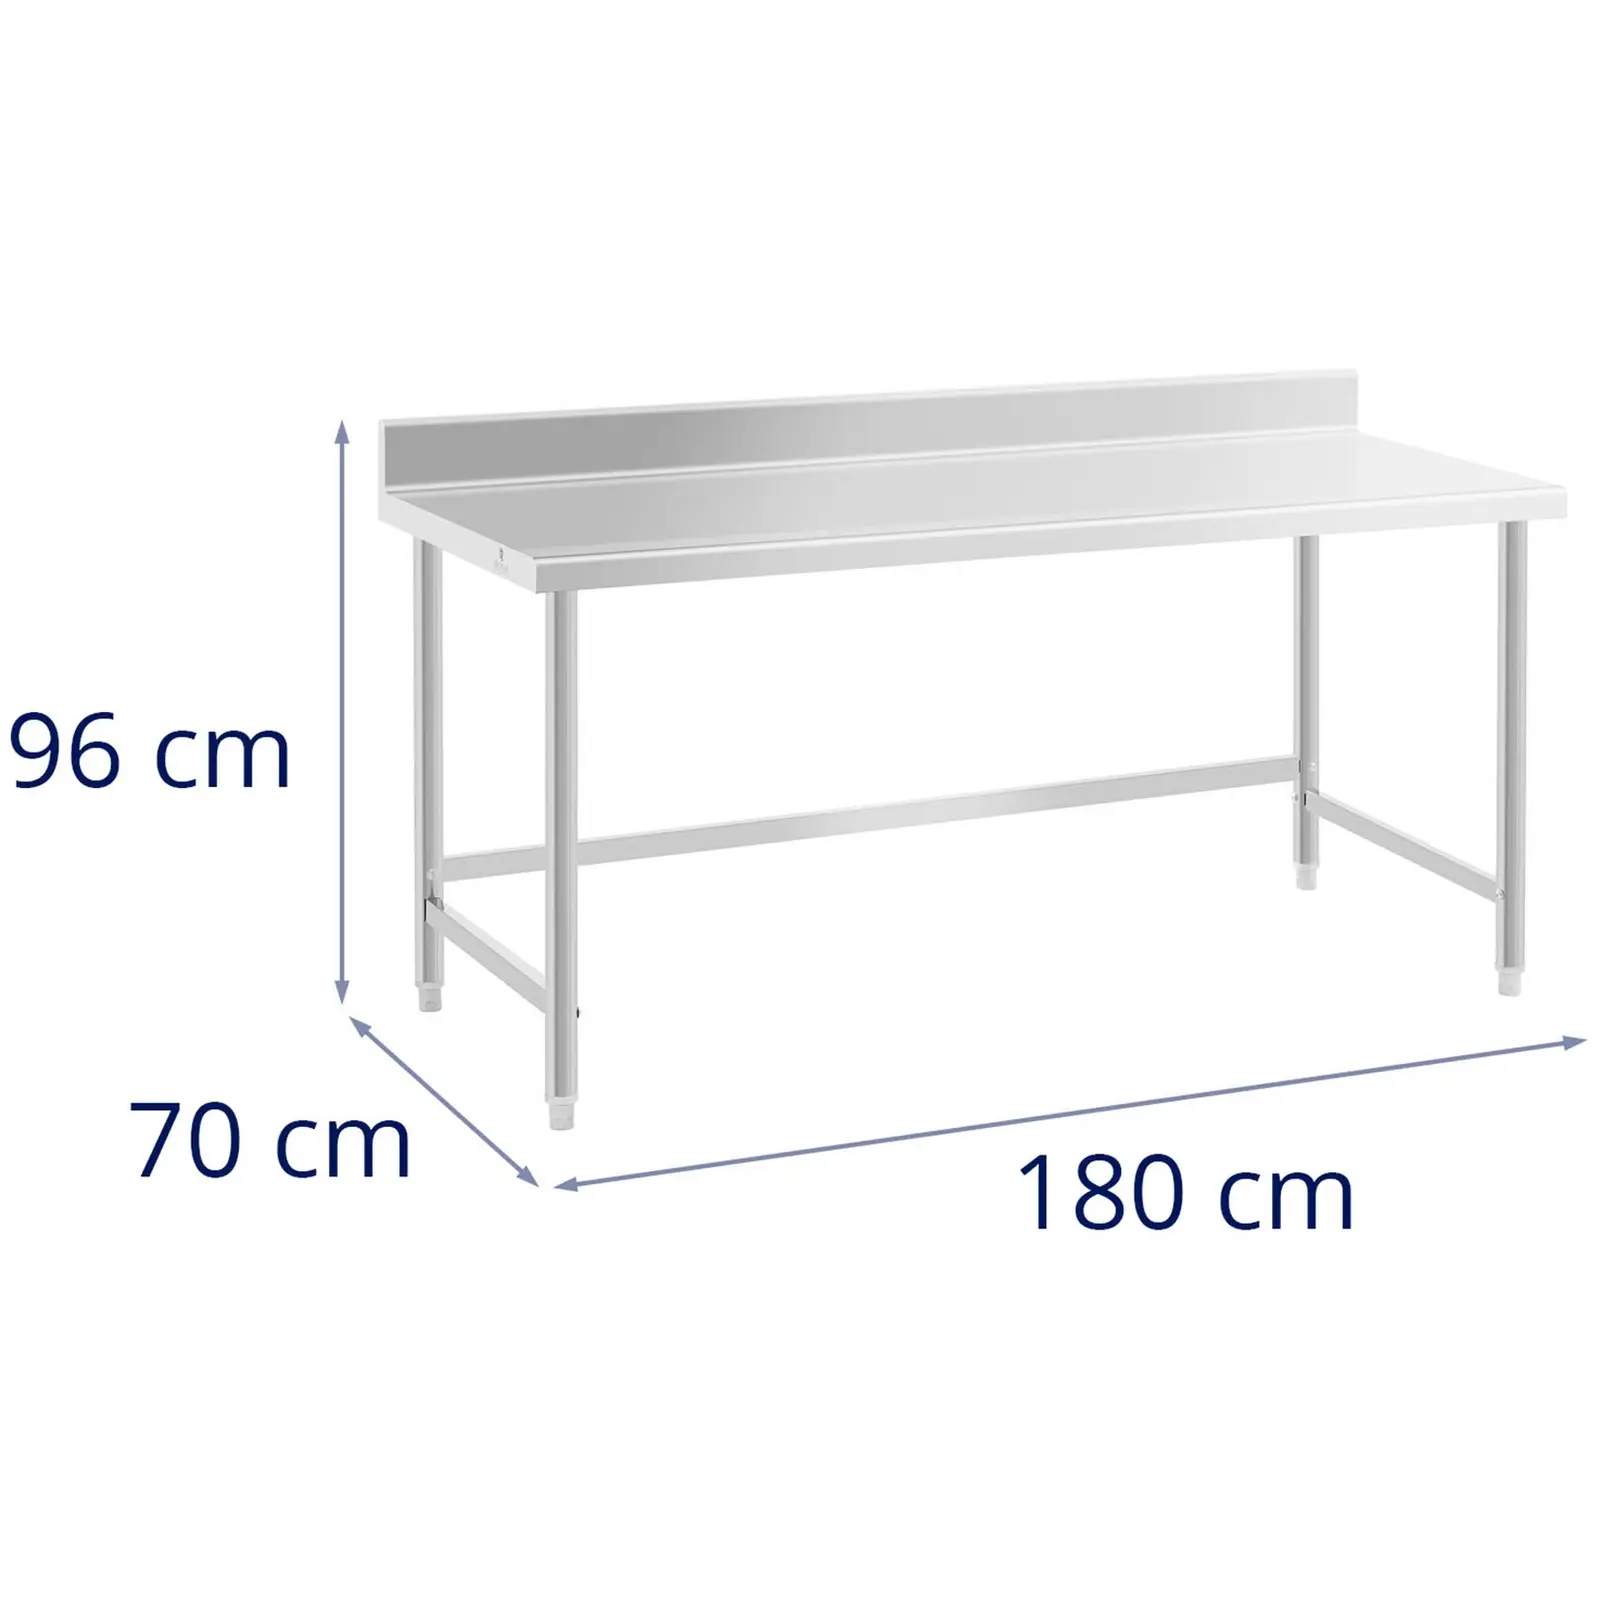 Pracovní stůl z ušlechtilé oceli - 180 x 70 cm - lem - nosnost 96 kg - Royal Catering